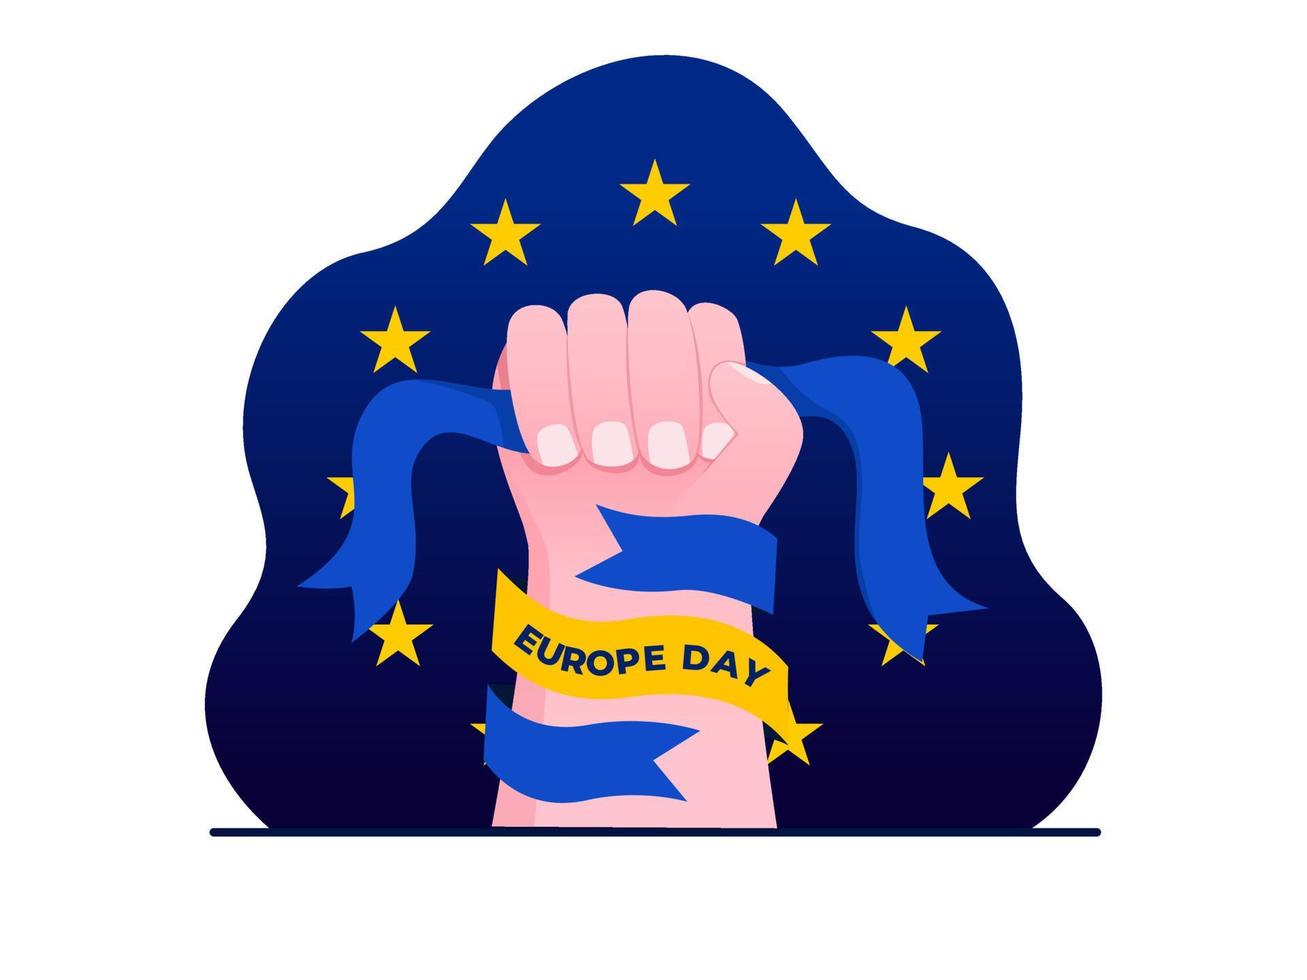 europatagesfeier am 9. mai design mit europaflagge. glücklicher europatag. kann für Grußkarten, Postkarten, Banner, Poster, Web, Print, soziale Medien usw. verwendet werden. vektor